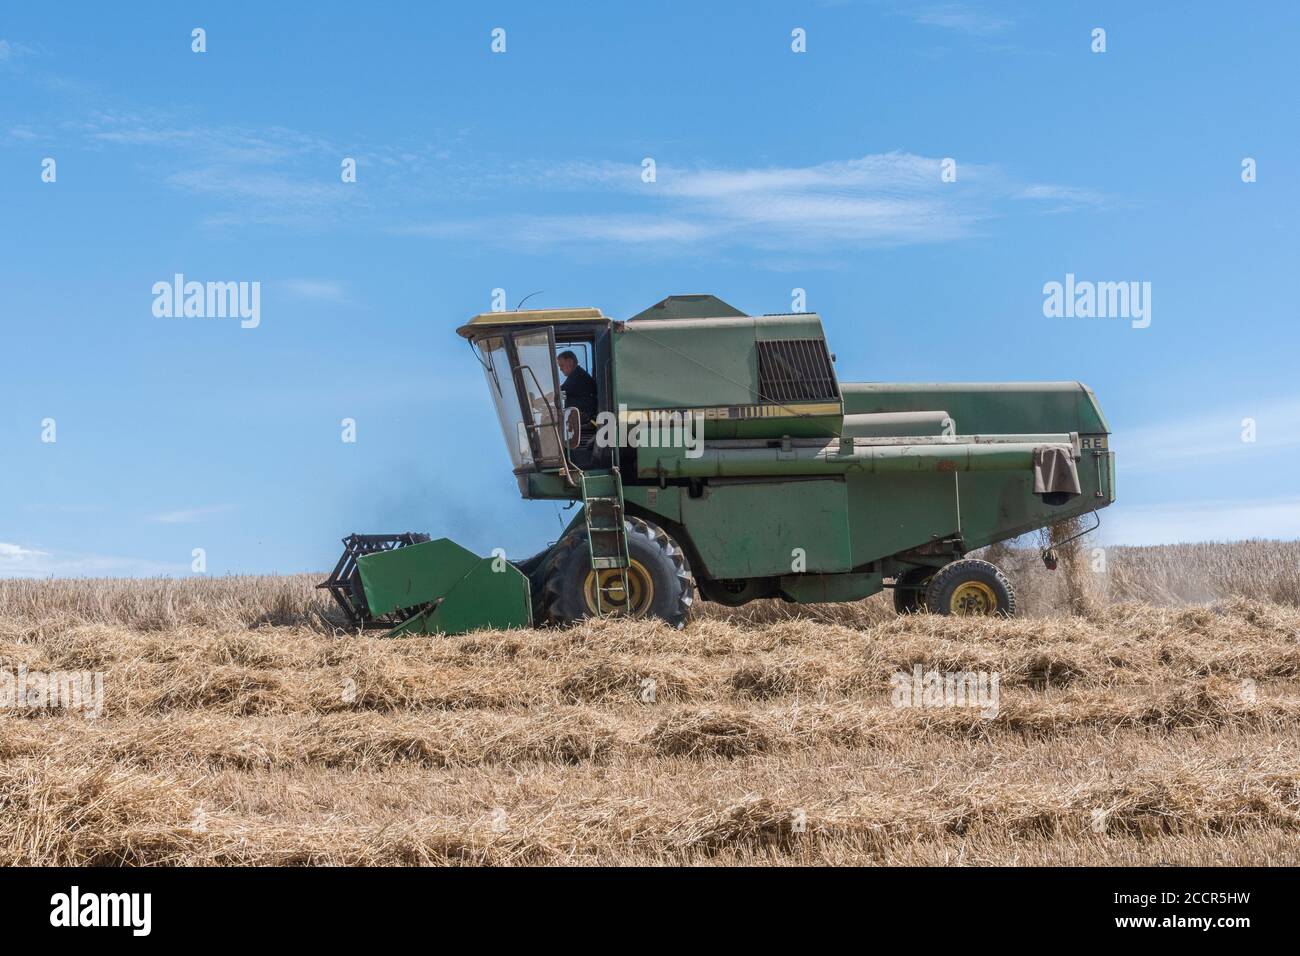 Cosechadora John Deere cortando la cosecha de trigo bajo el sol de verano. Cabezal delantero, molinete de dientes, tubo lateral y sacudidor visible. Para la cosecha de trigo del Reino Unido de 2020. Foto de stock